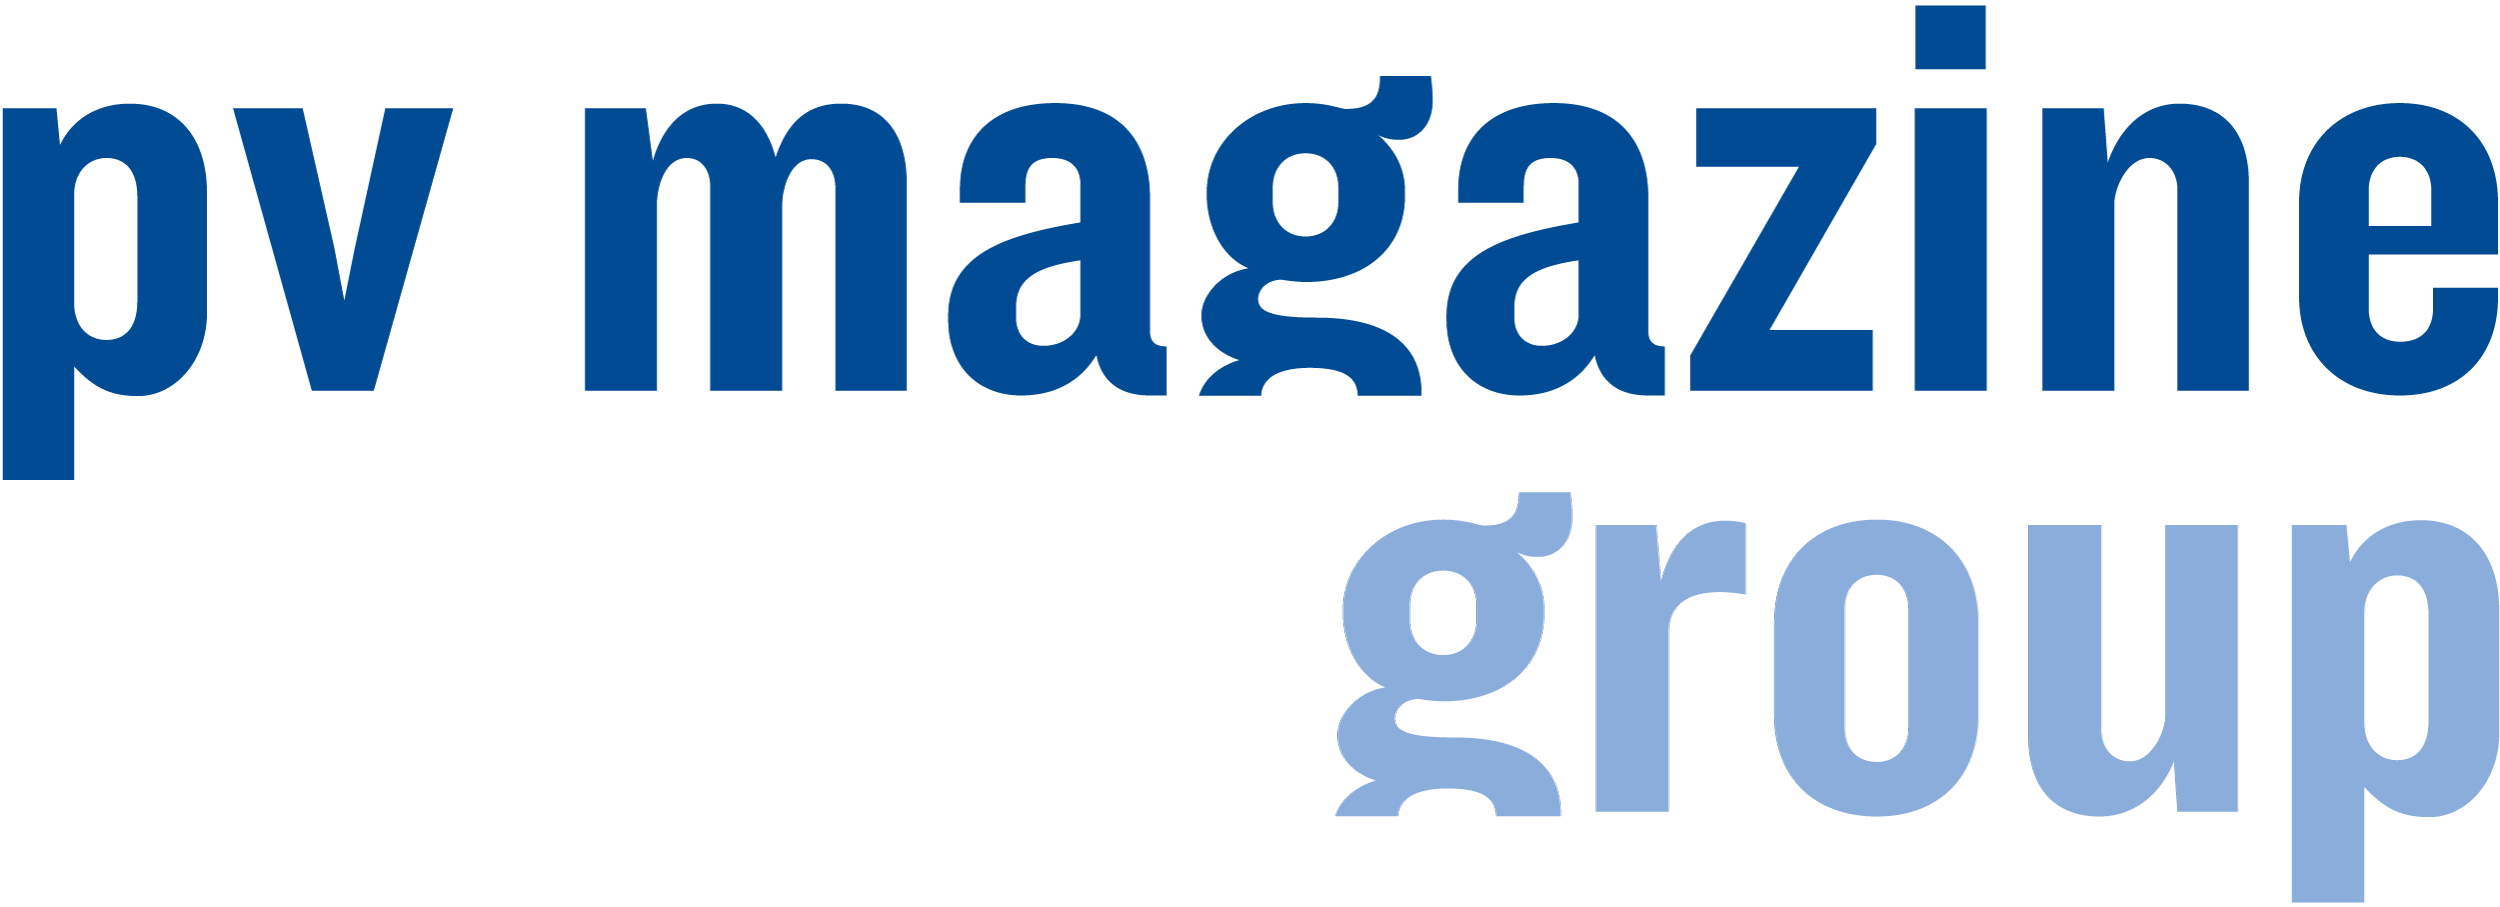 pv magazine group logo